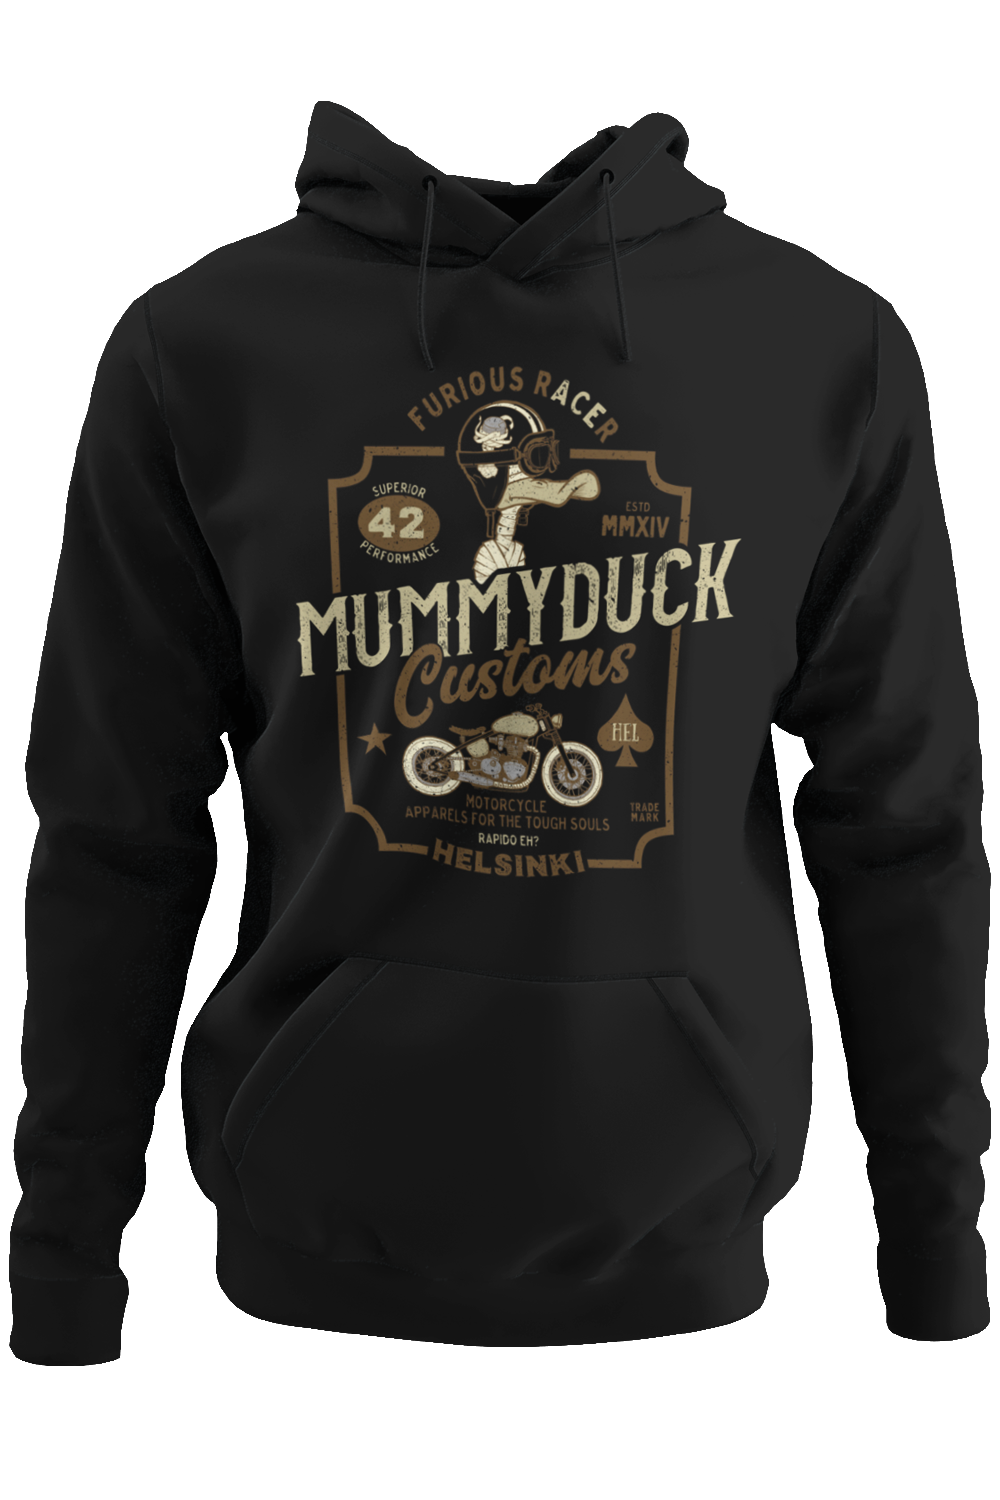 Mummyduck Customs Motorcycle Hoodie